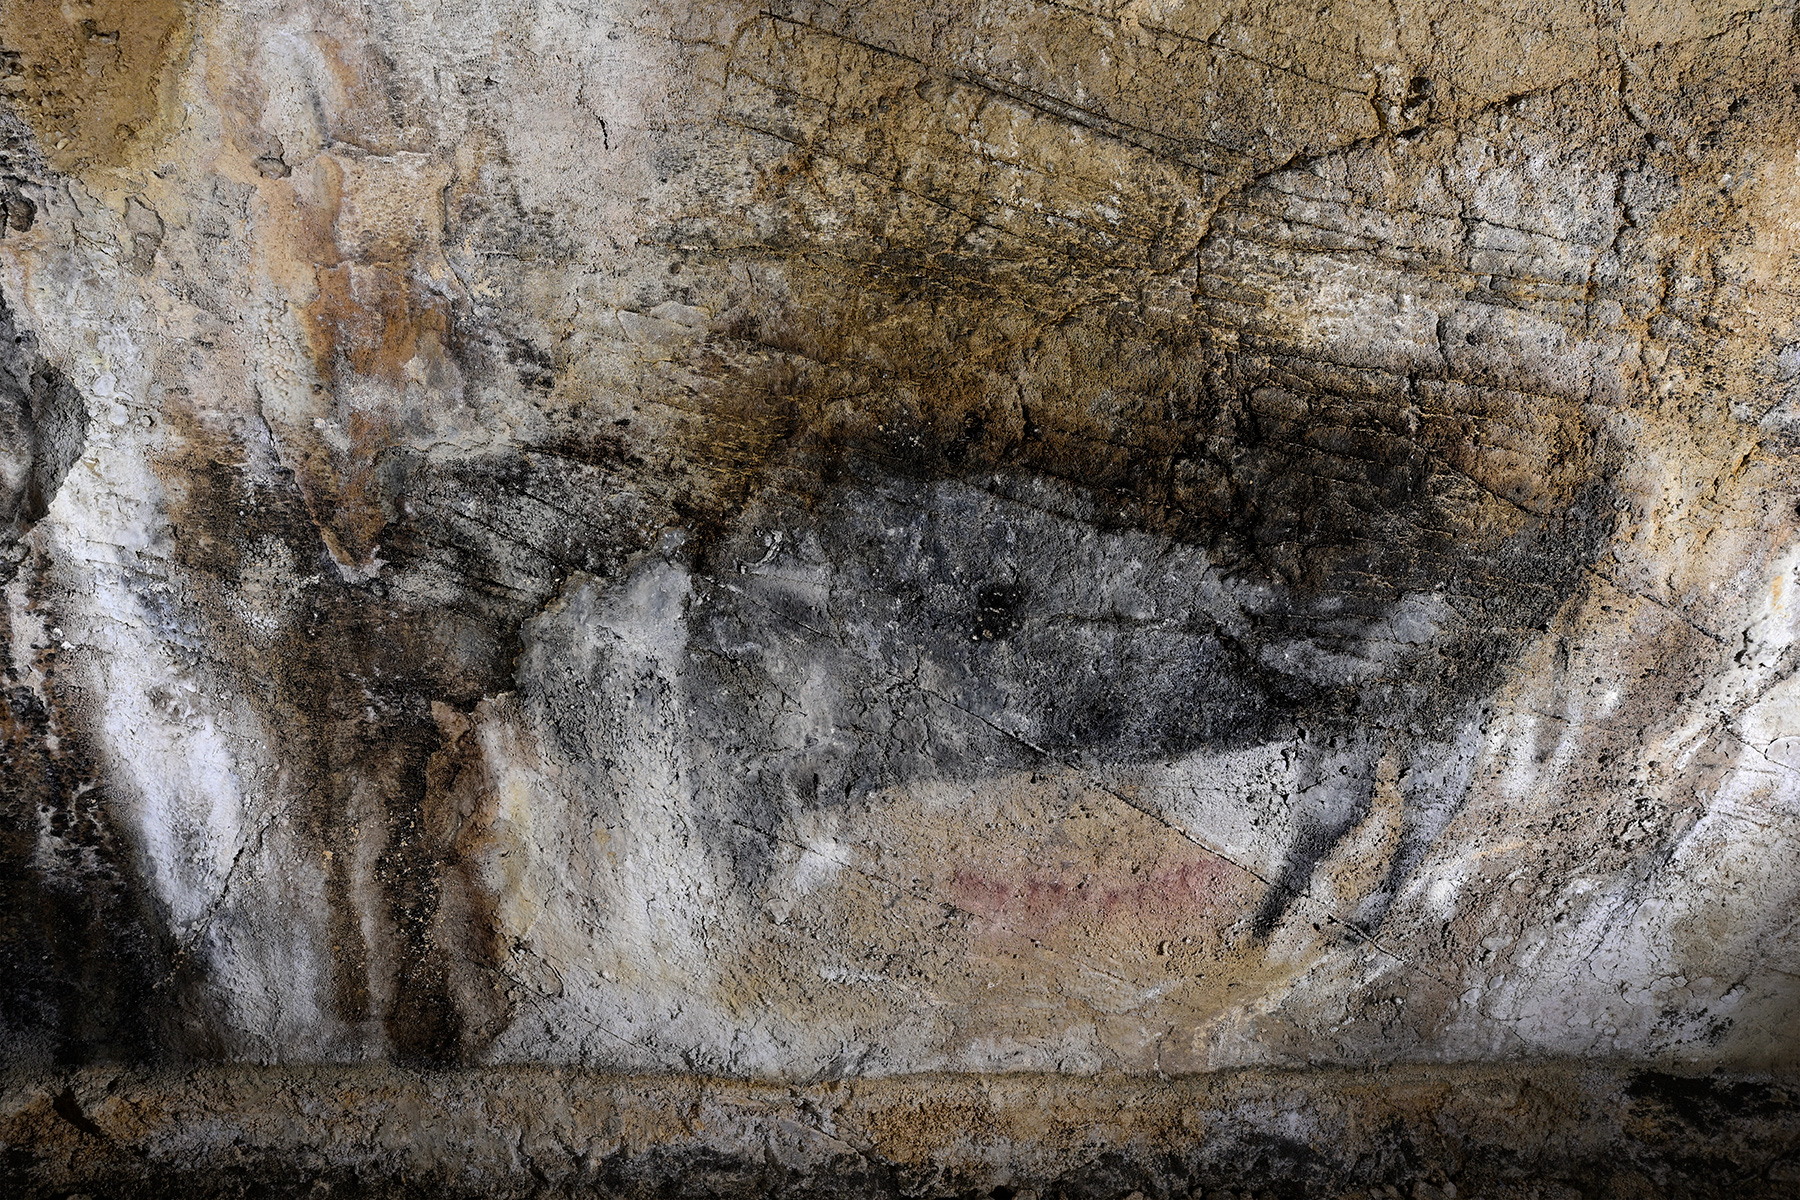 Grotte préhistorique de Bédeilhac (Ariège) - Peinture rupestre : le bison 